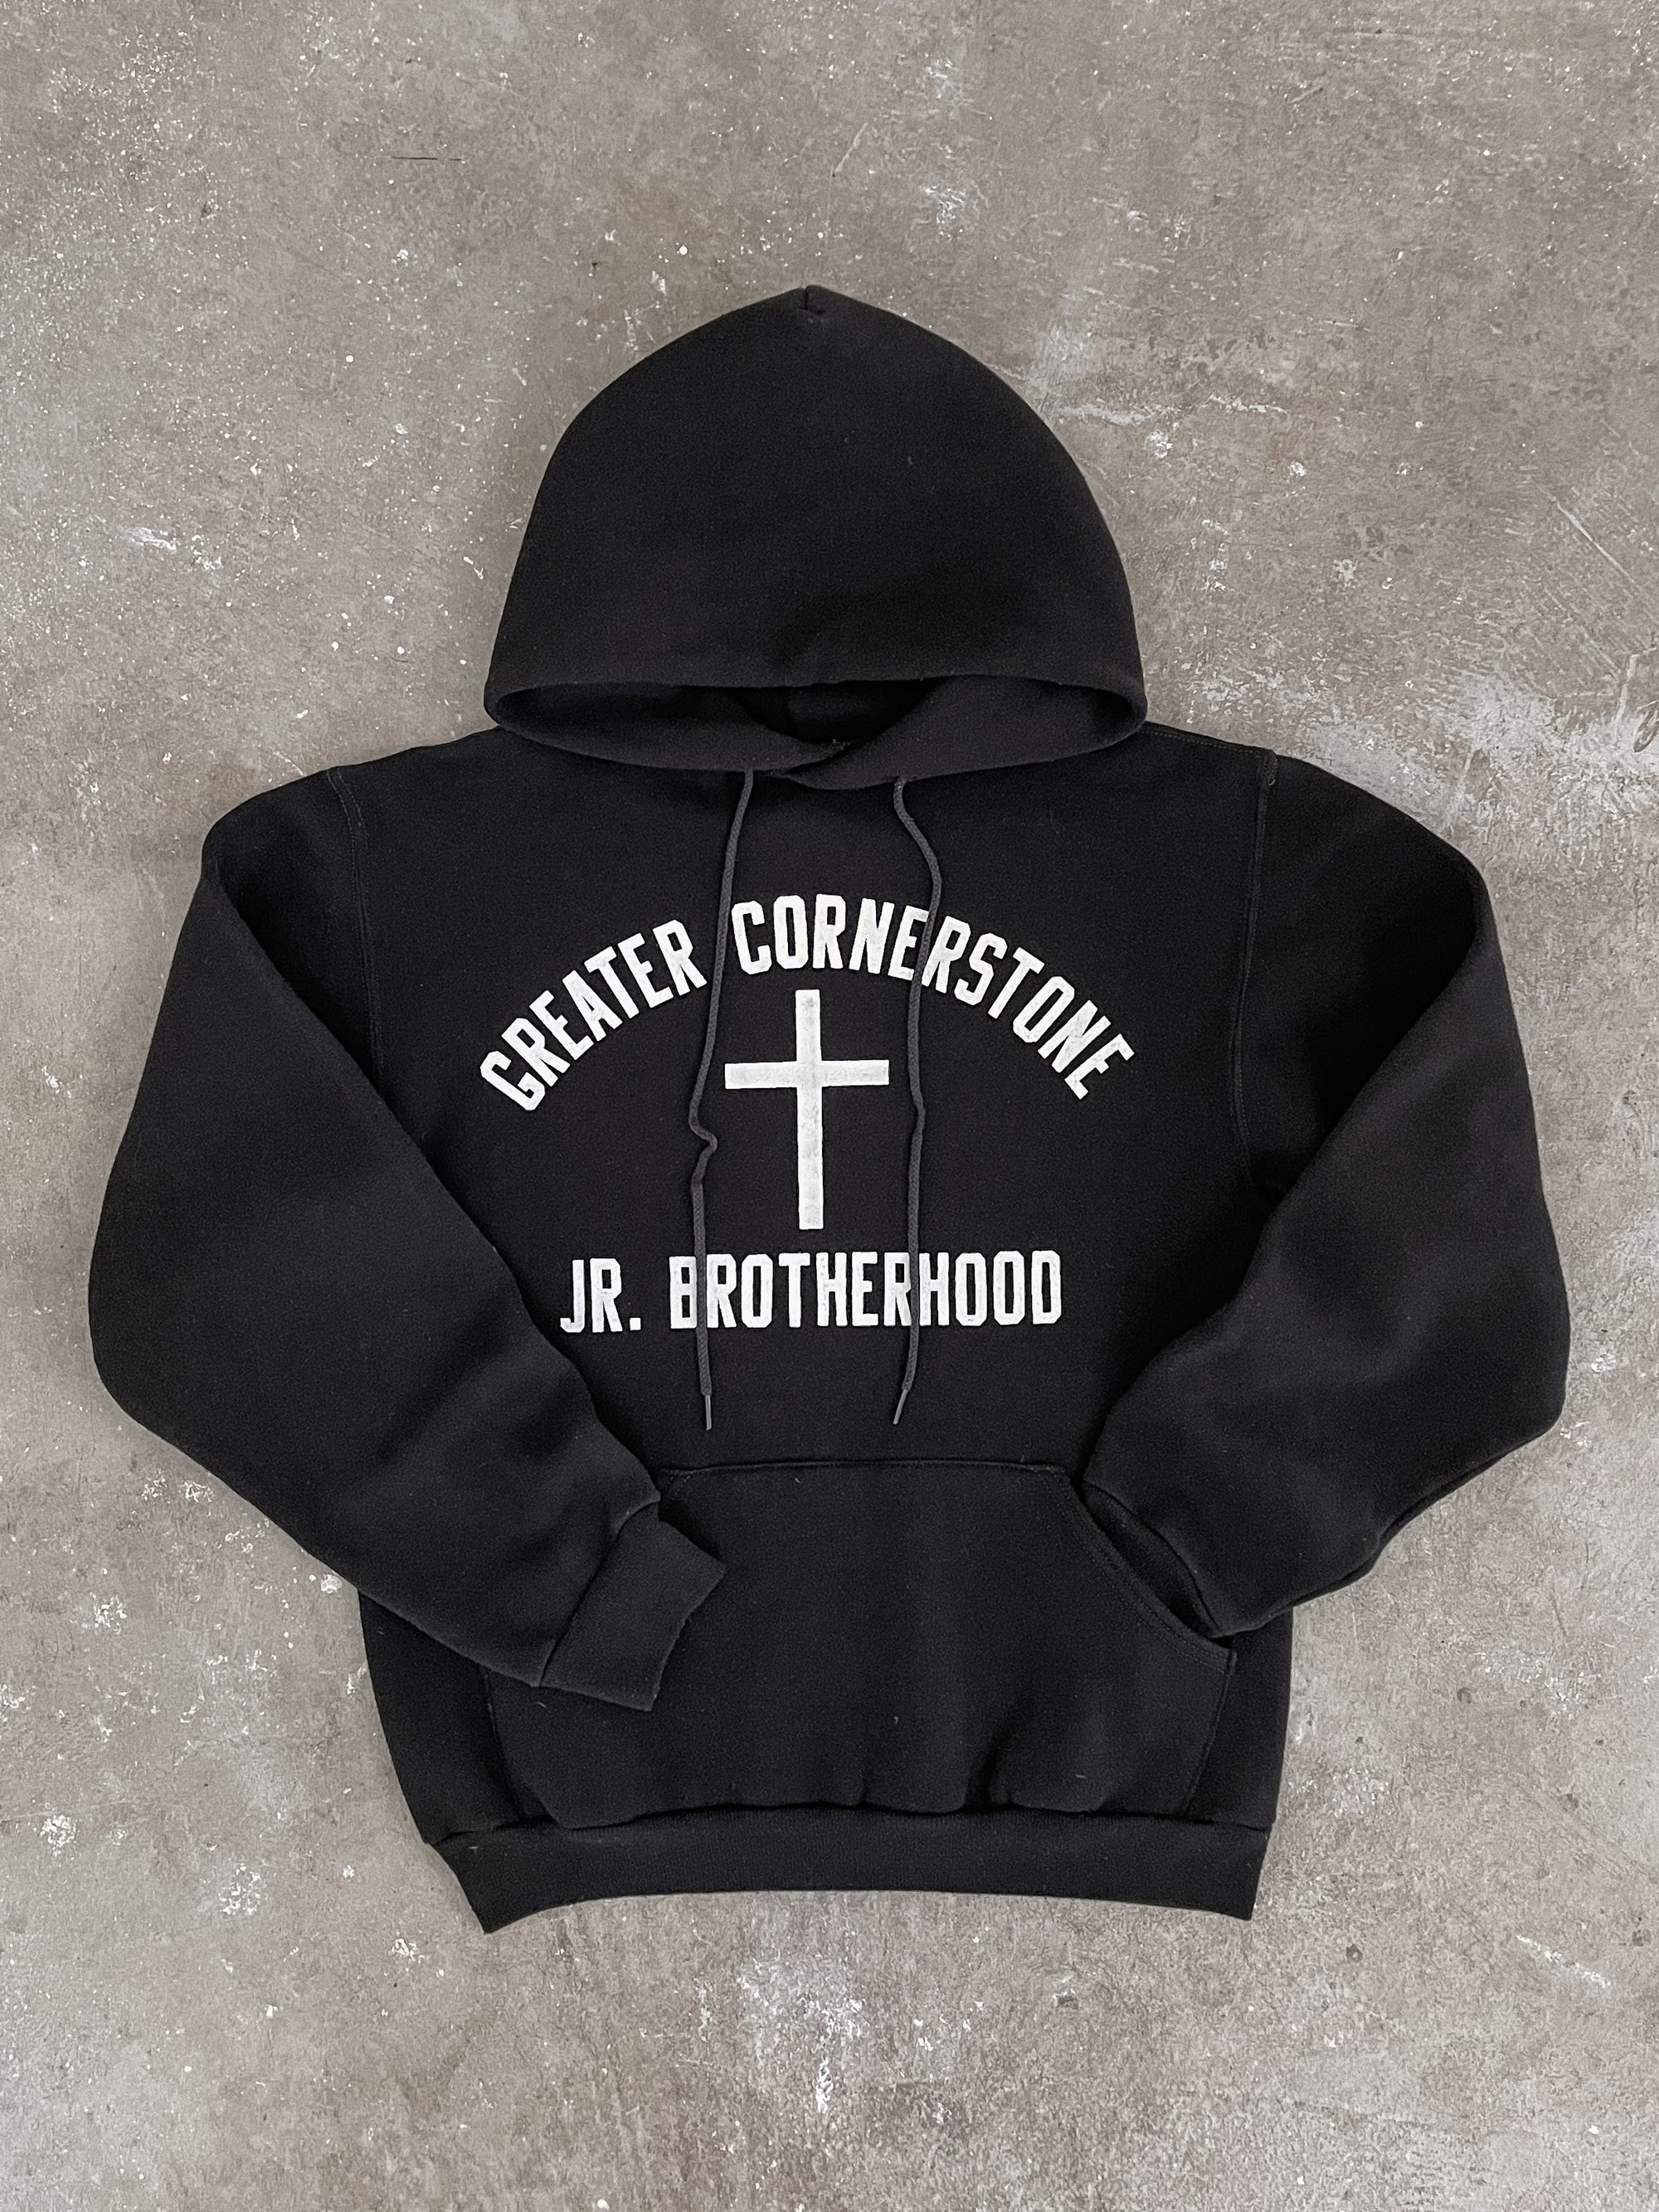 1980s Russell “Greater Cornerstone Jr. Brotherhood” Hoodie (S)